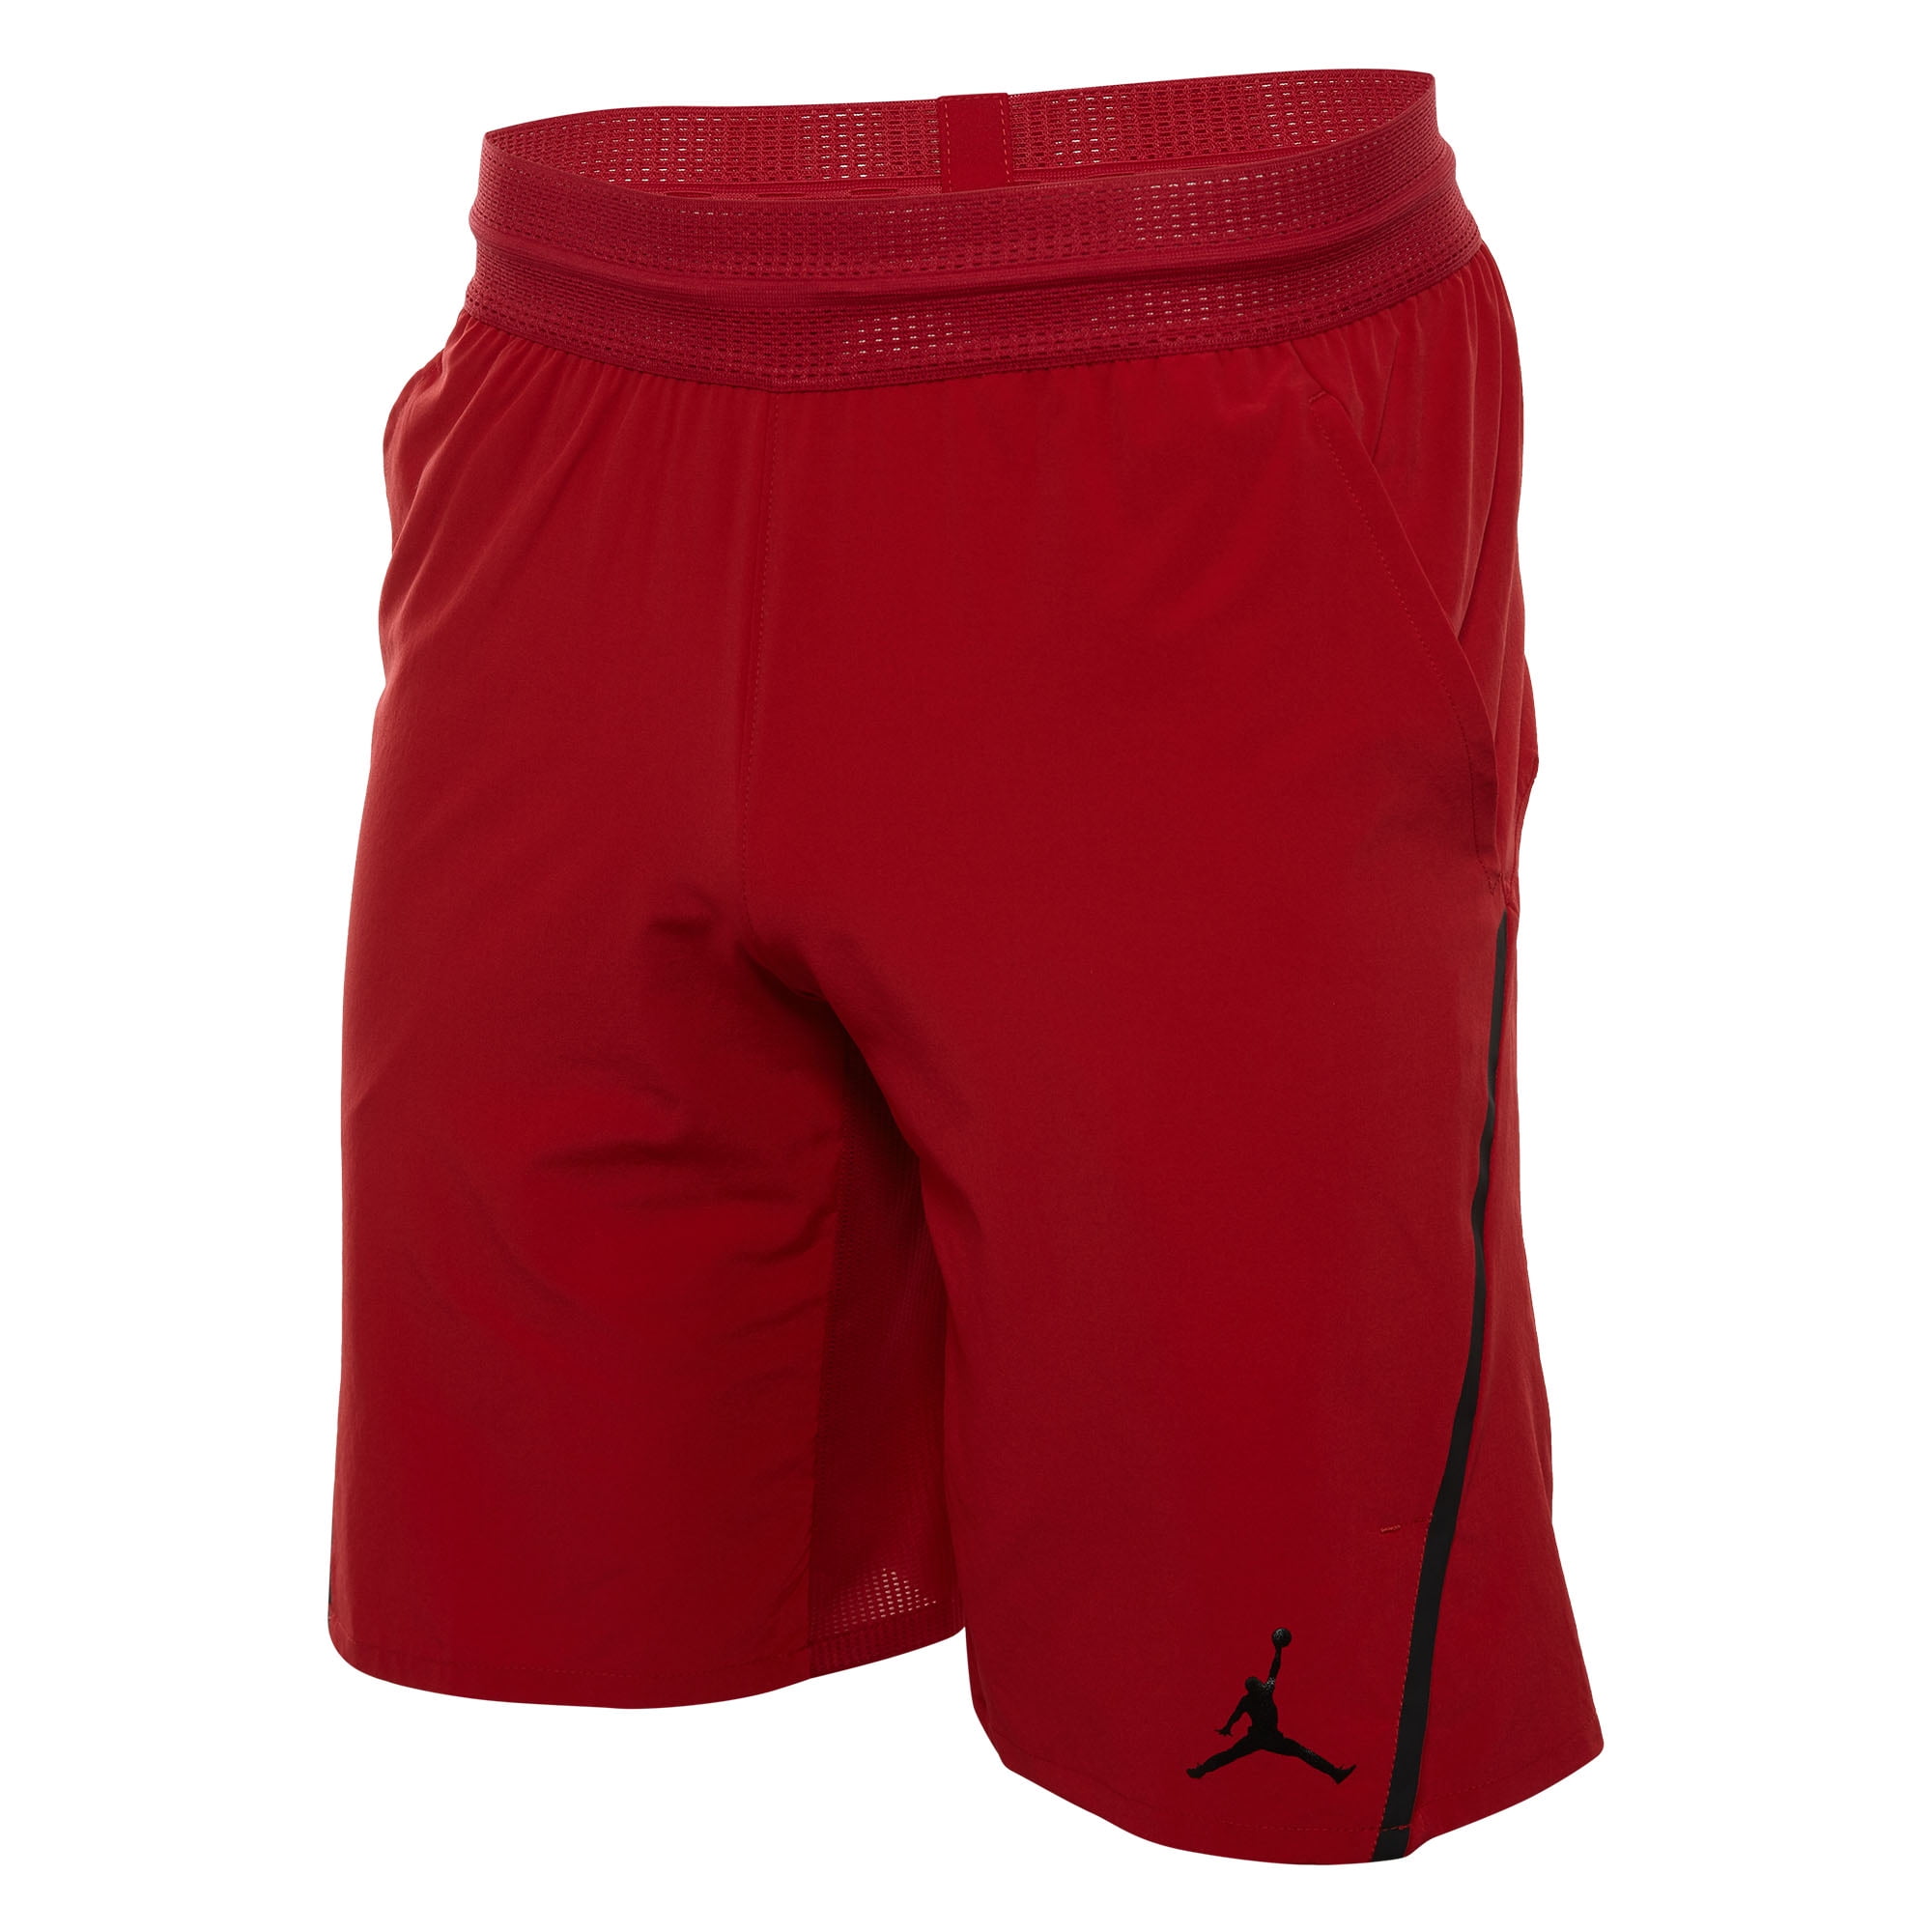 Jordan - Jordan Ultimate Flight Shorts Mens Style : 861498 - Walmart ...